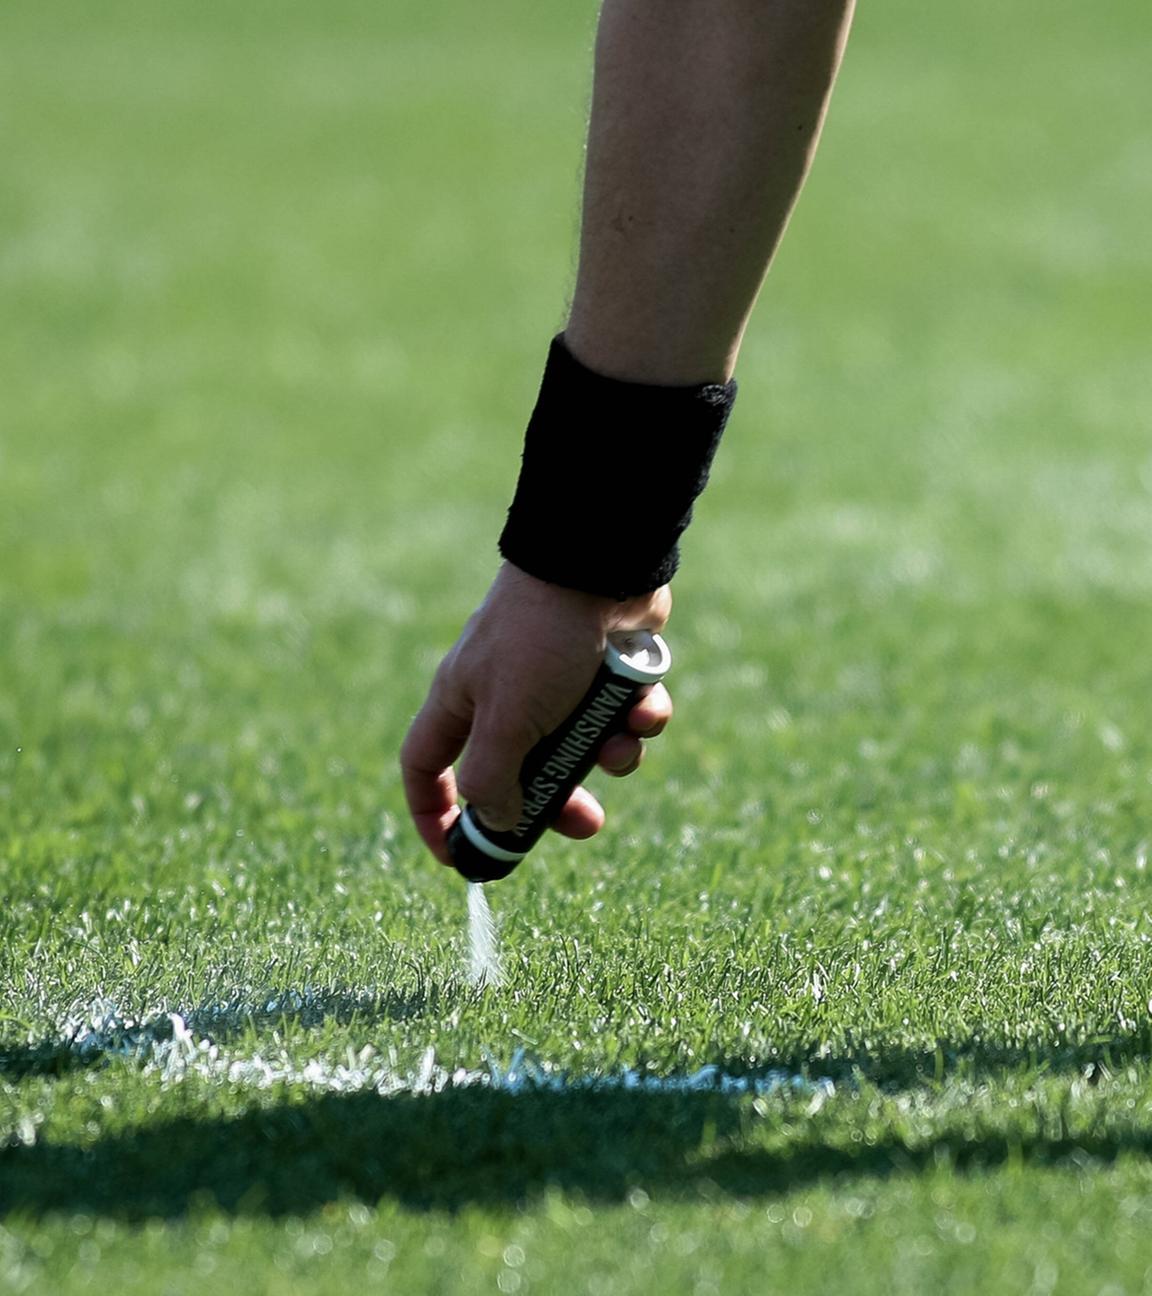 Ein Schiedsrichter sprüht die Freistoßlinie mit Sprühschaum auf den Rasen